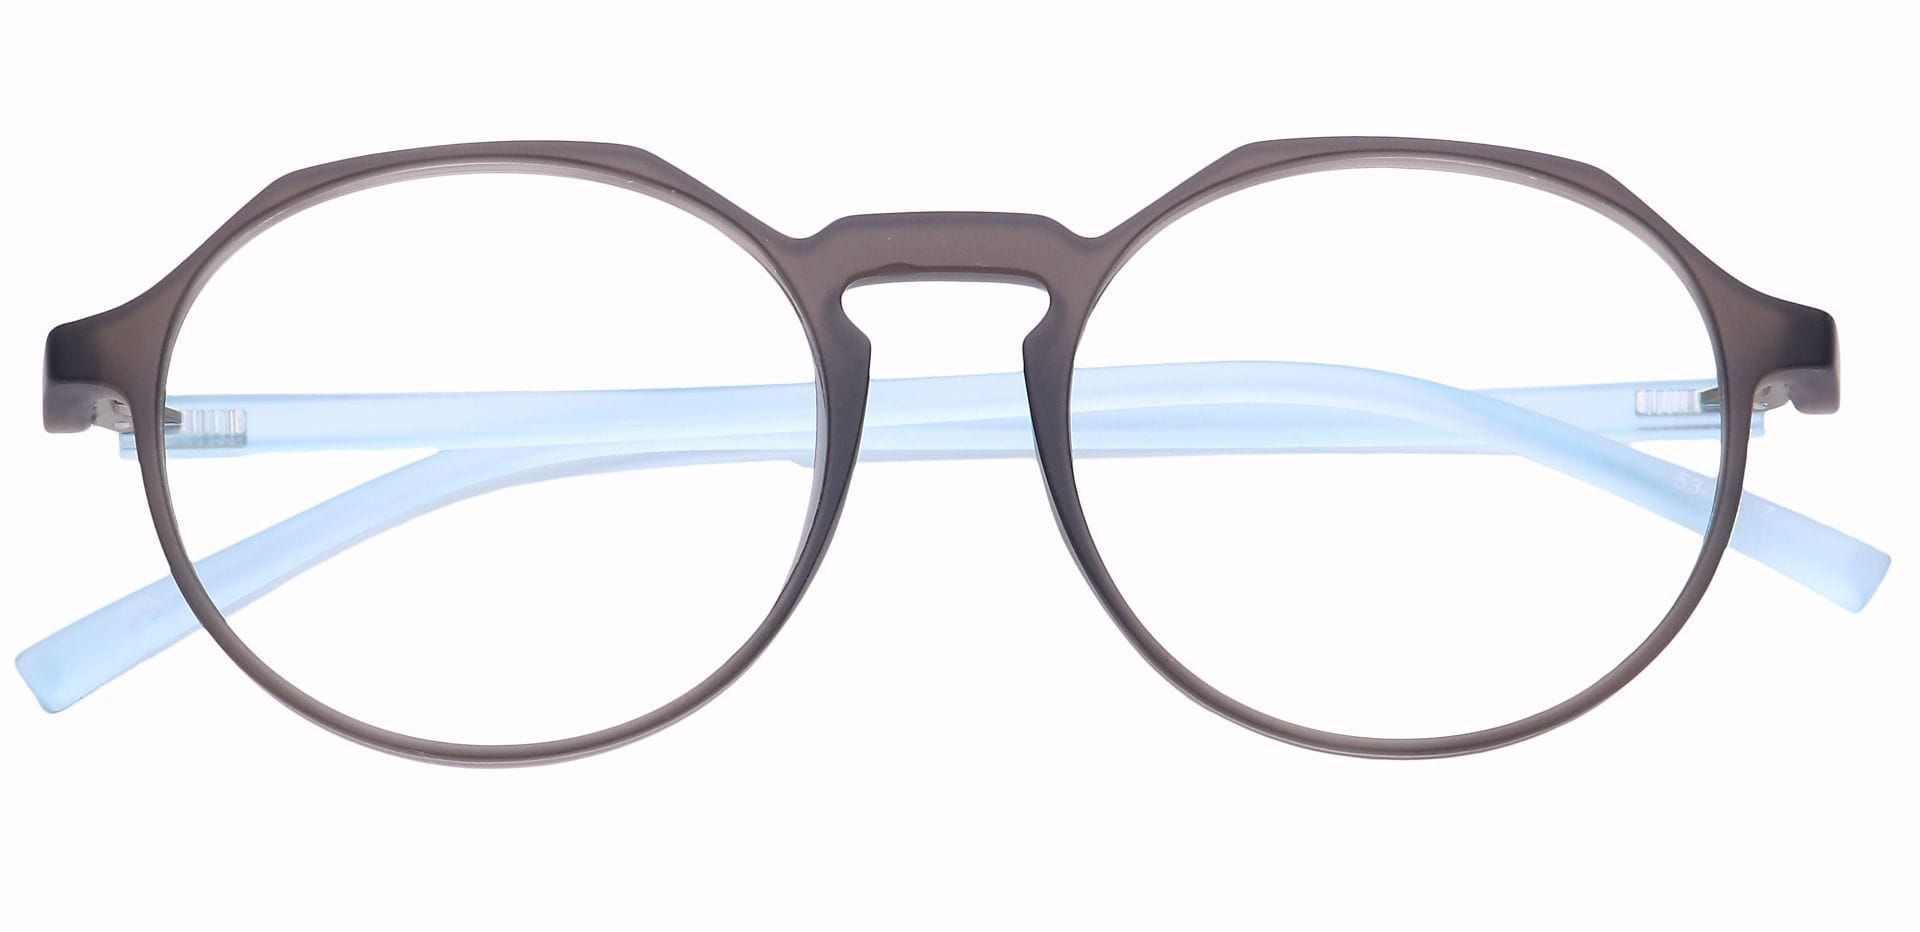 Paragon Oval Non-Rx Glasses - Blue